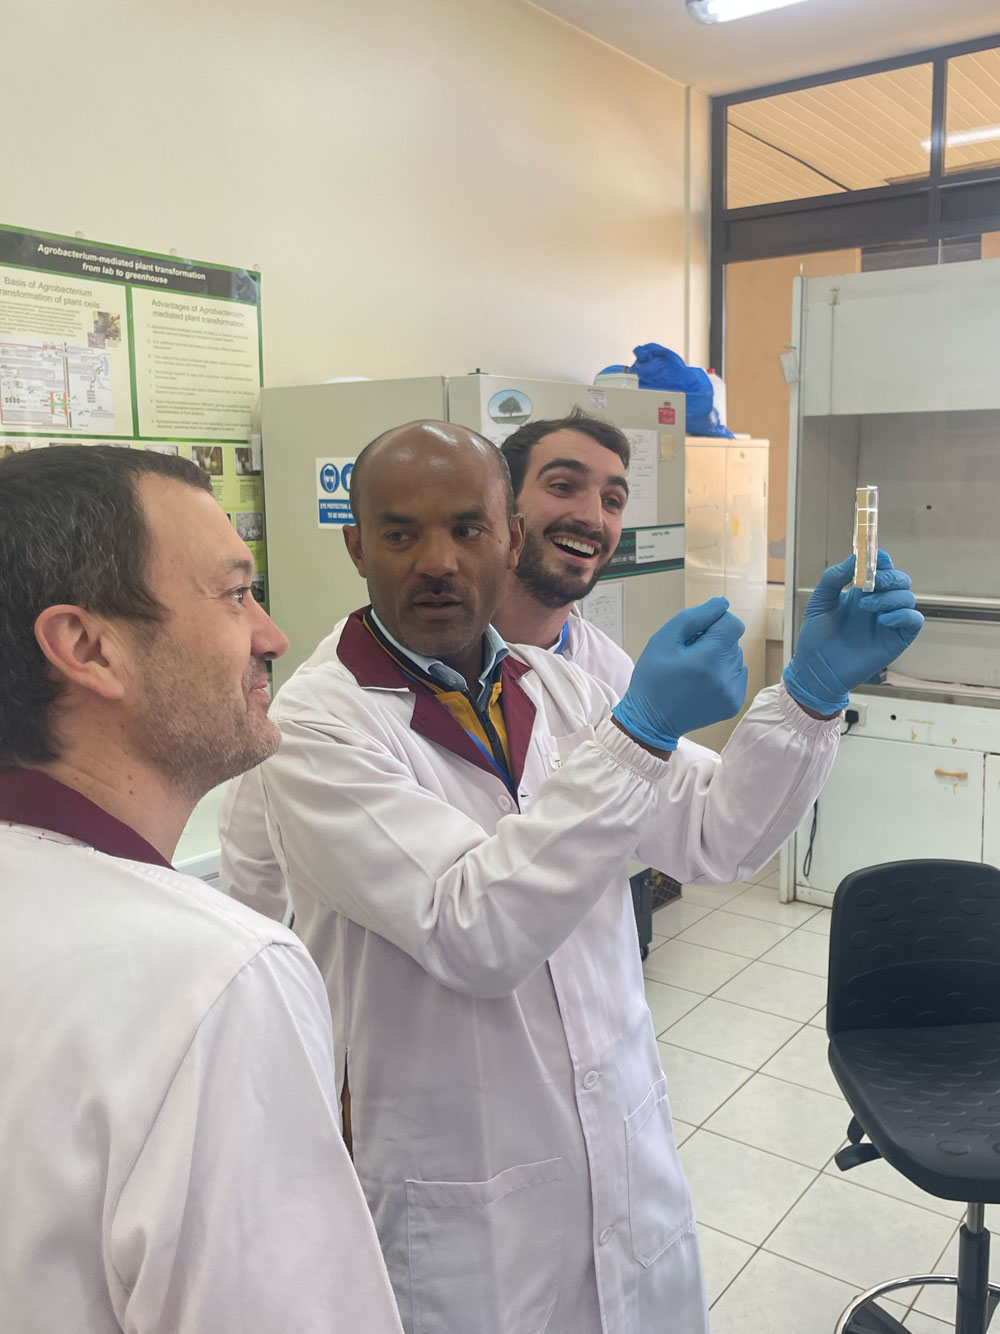 Dave Savage、Nicholas Karavolias 和 Nuhamin Tilahun 在实验室的照片